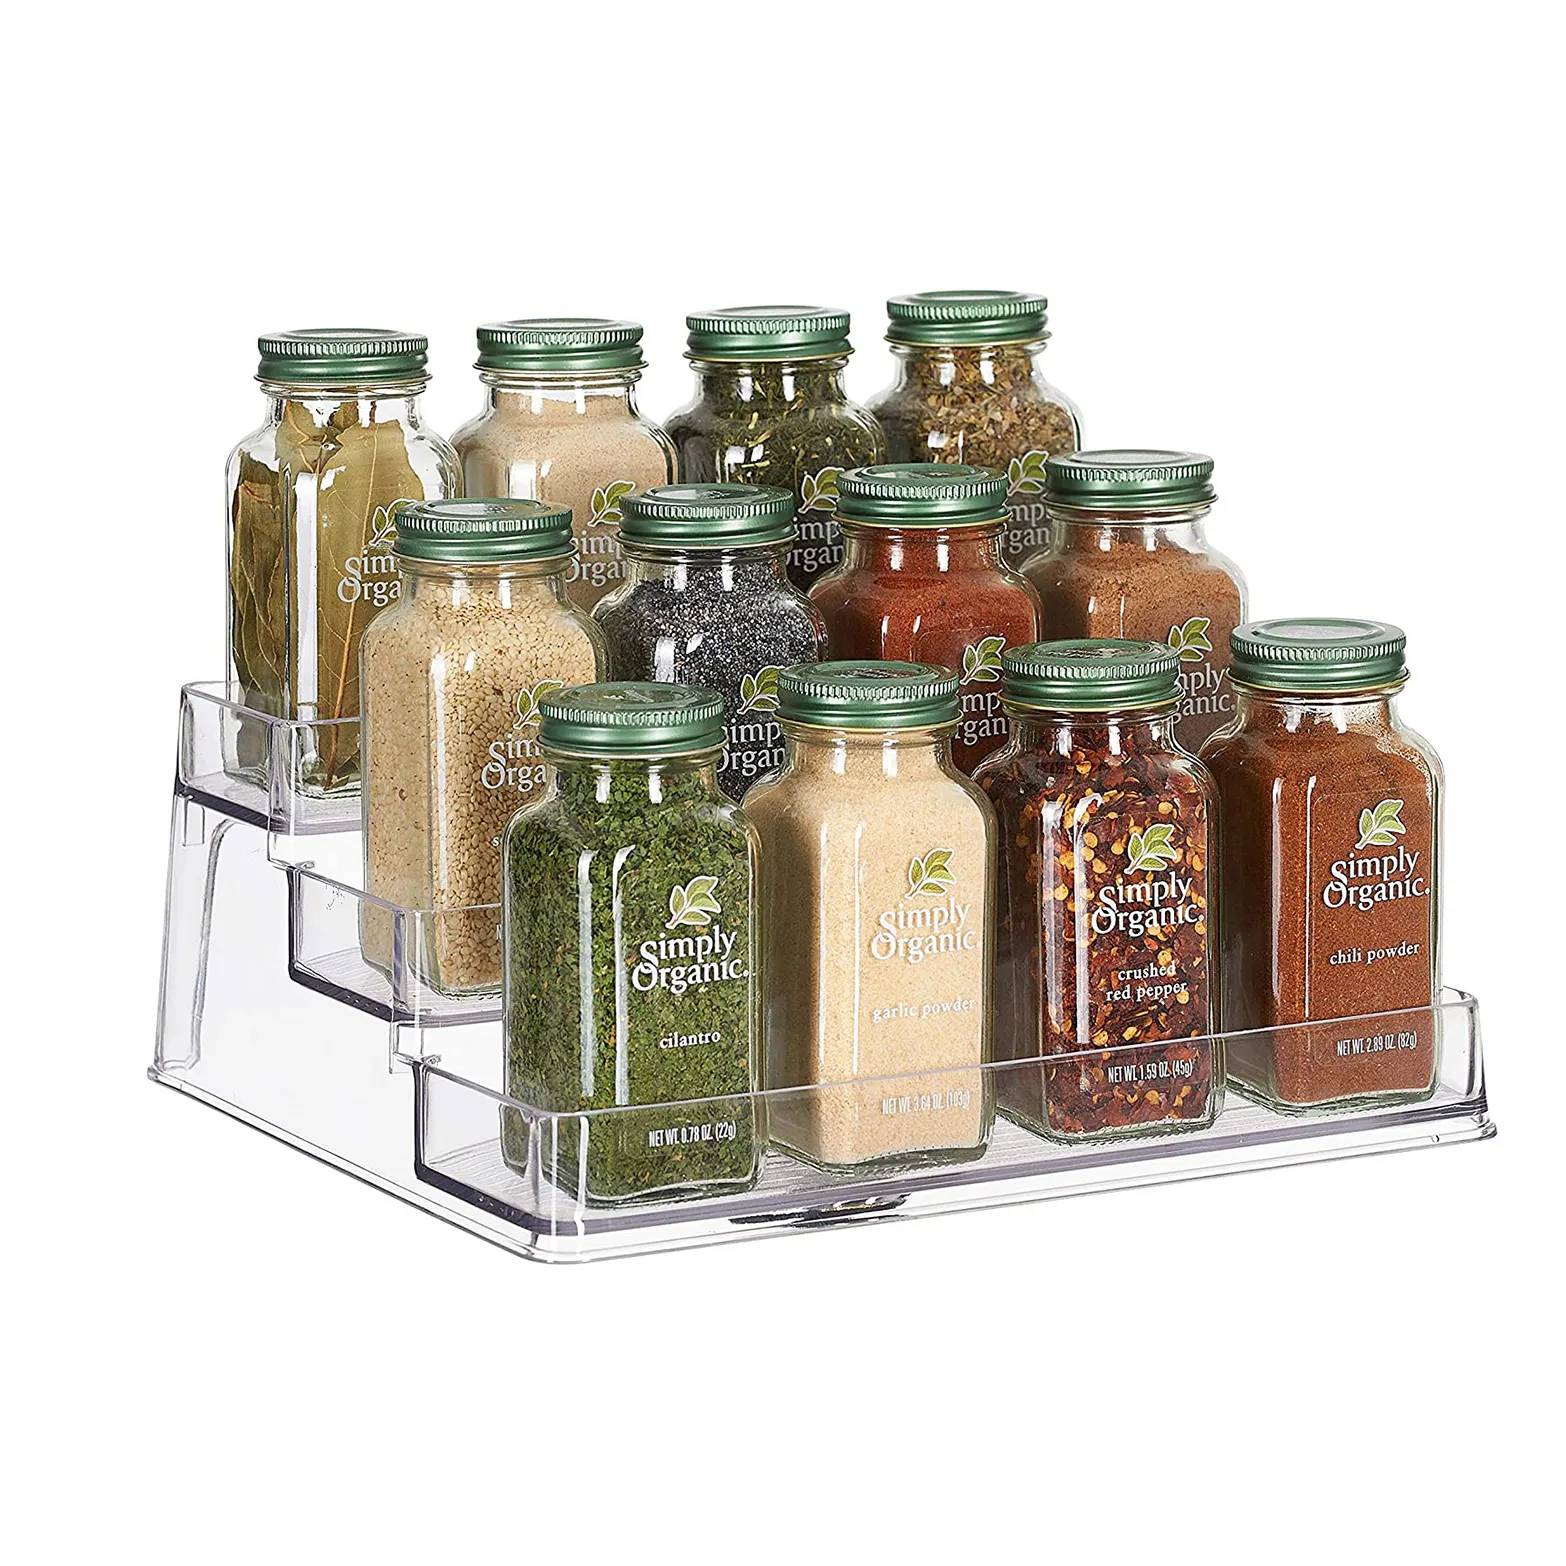 Plastik baharat ve gıda mutfak dolabı raf organizatör, 3 katmanlı depolama Modern kompakt Caddy raf tutar baharat ot şişeler kavanoz